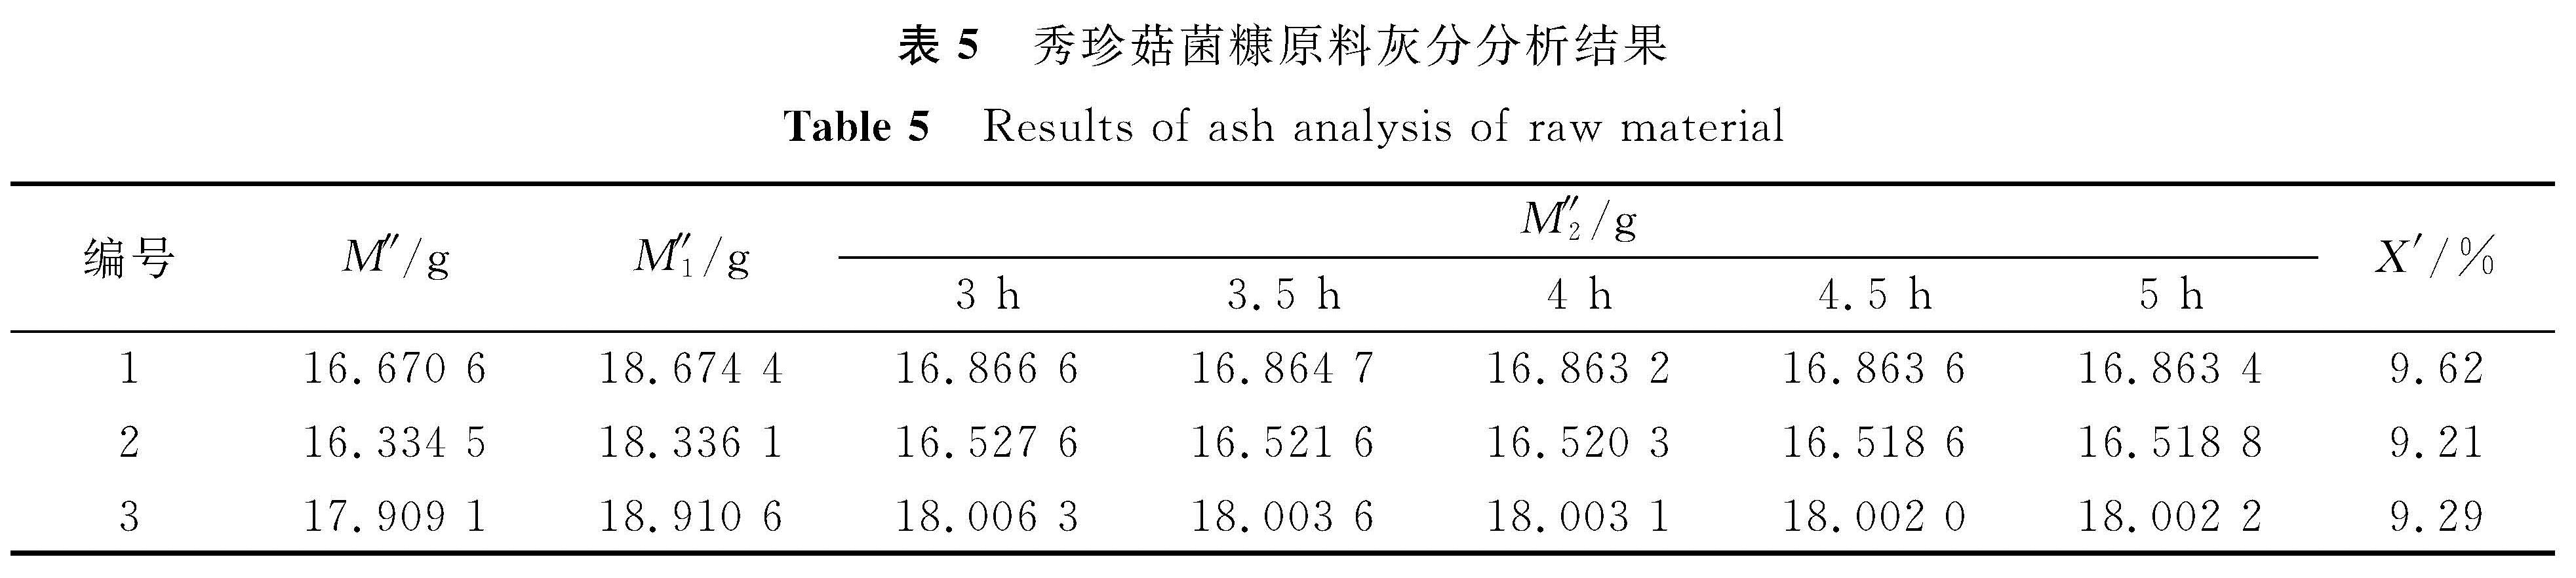 表5 秀珍菇菌糠原料灰分分析结果<br/>Table 5 Results of ash analysis of raw material